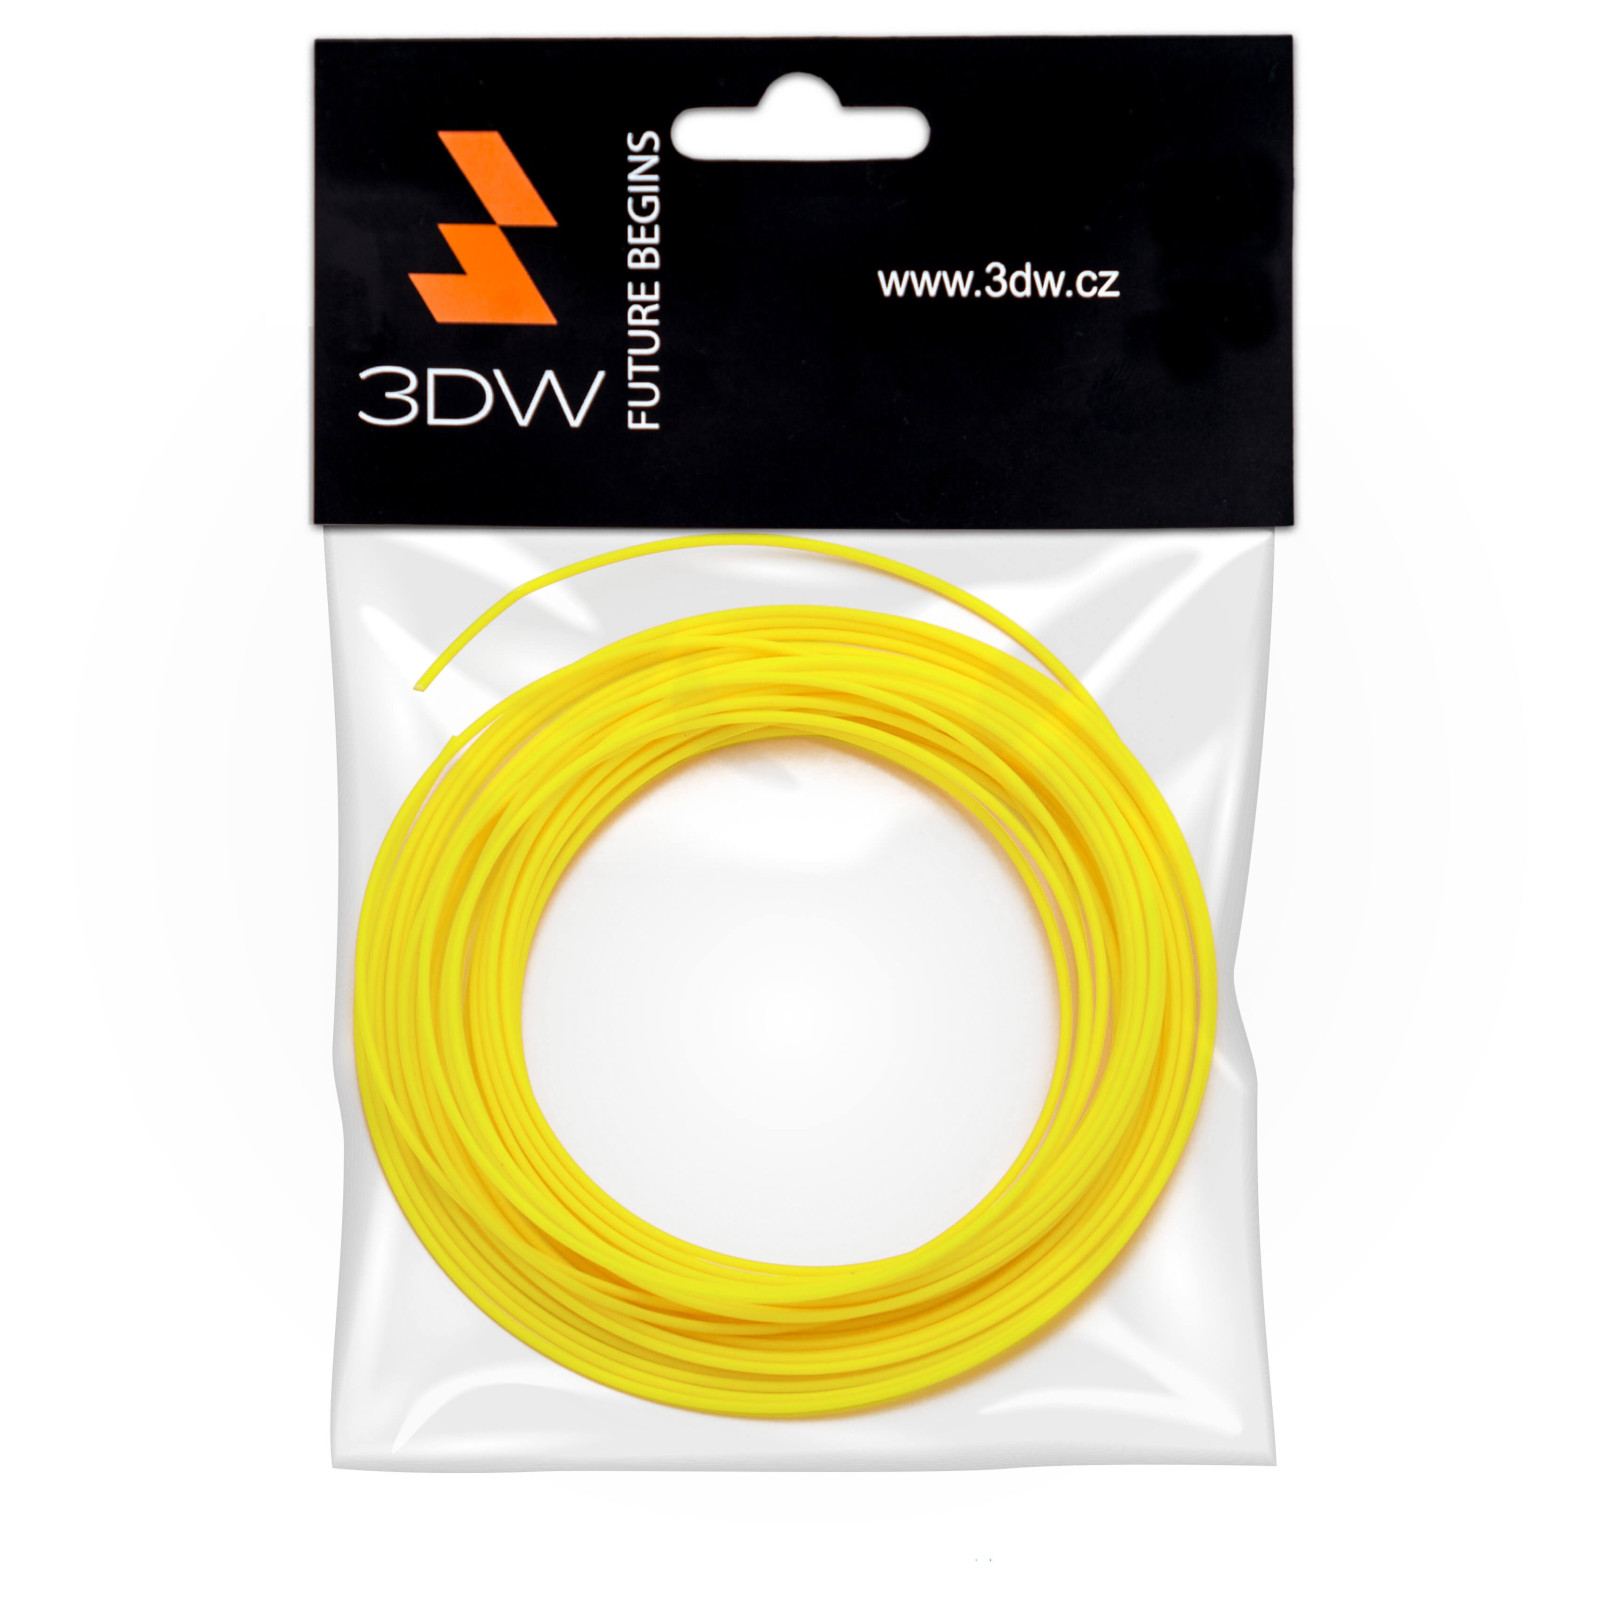 Levně 3DW - ABS filament 1,75mm žlutá, 10m, tisk 220-250°C